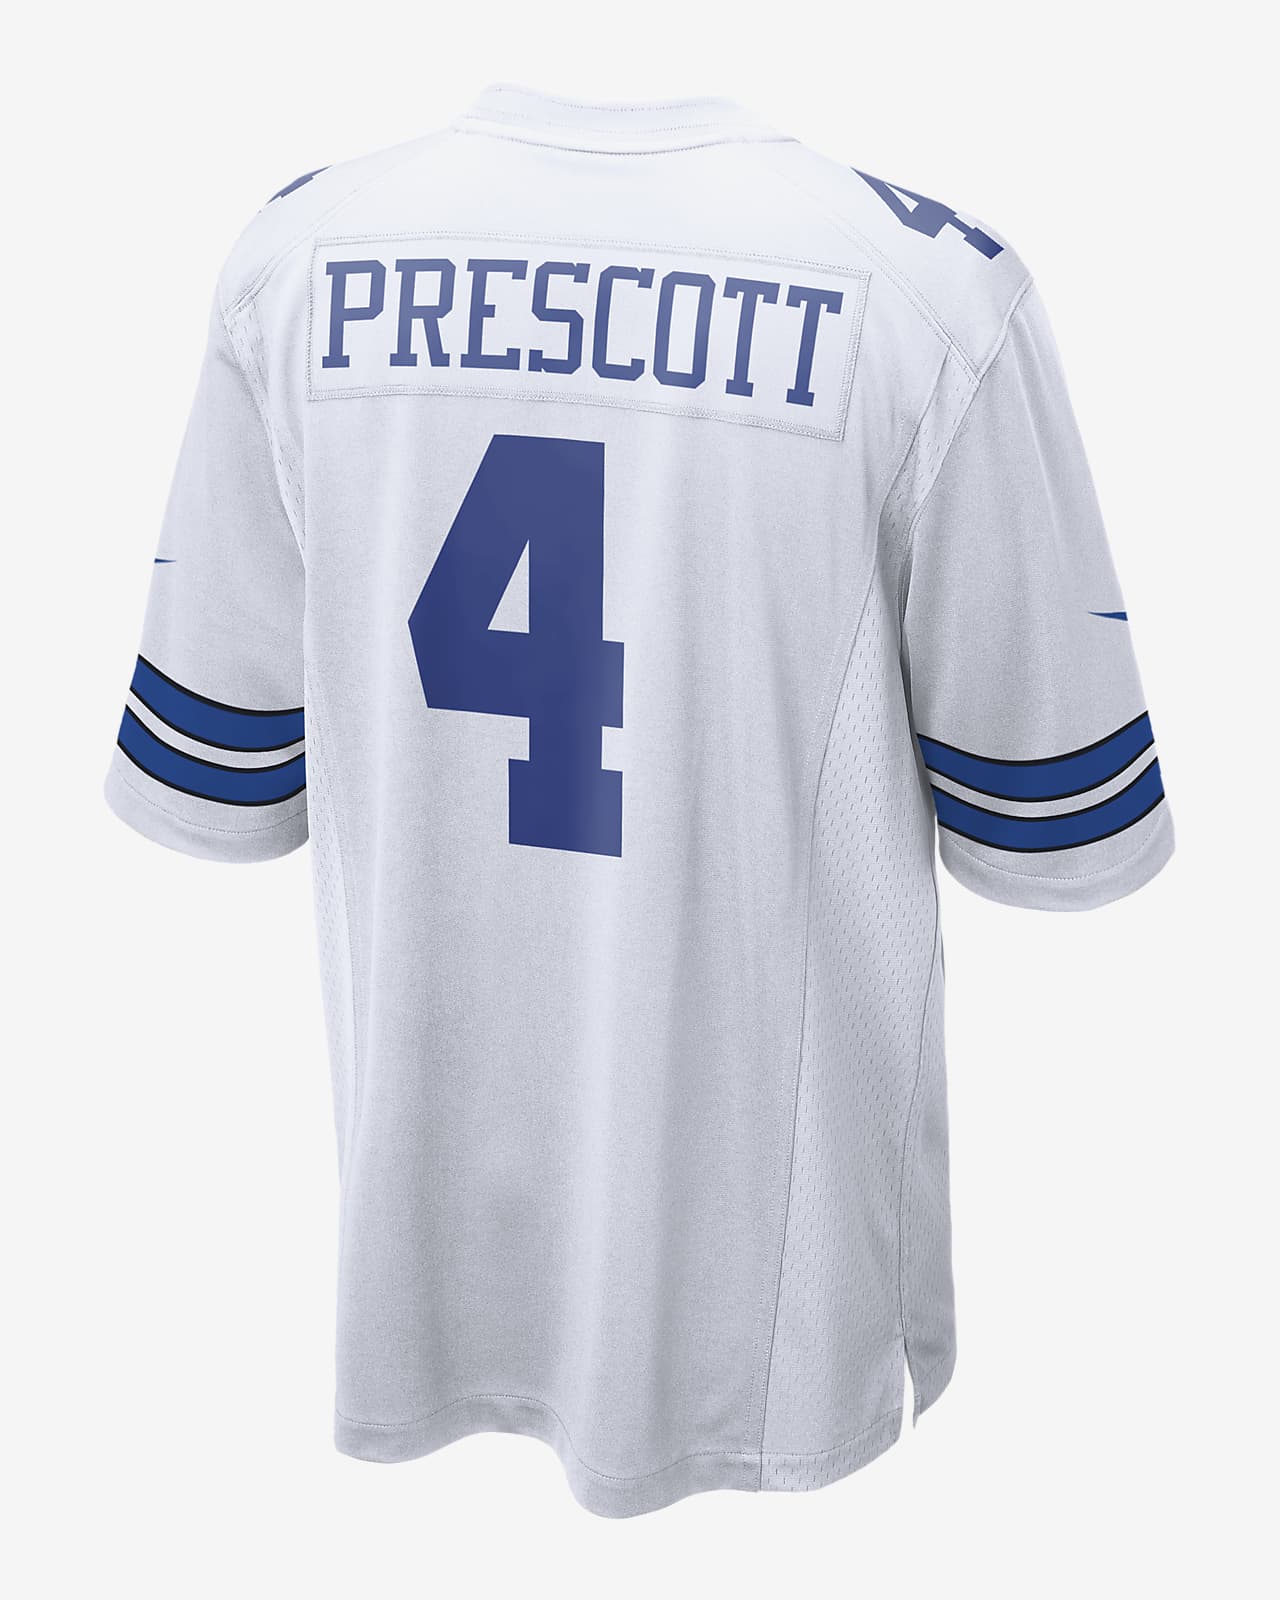 prescott football jersey